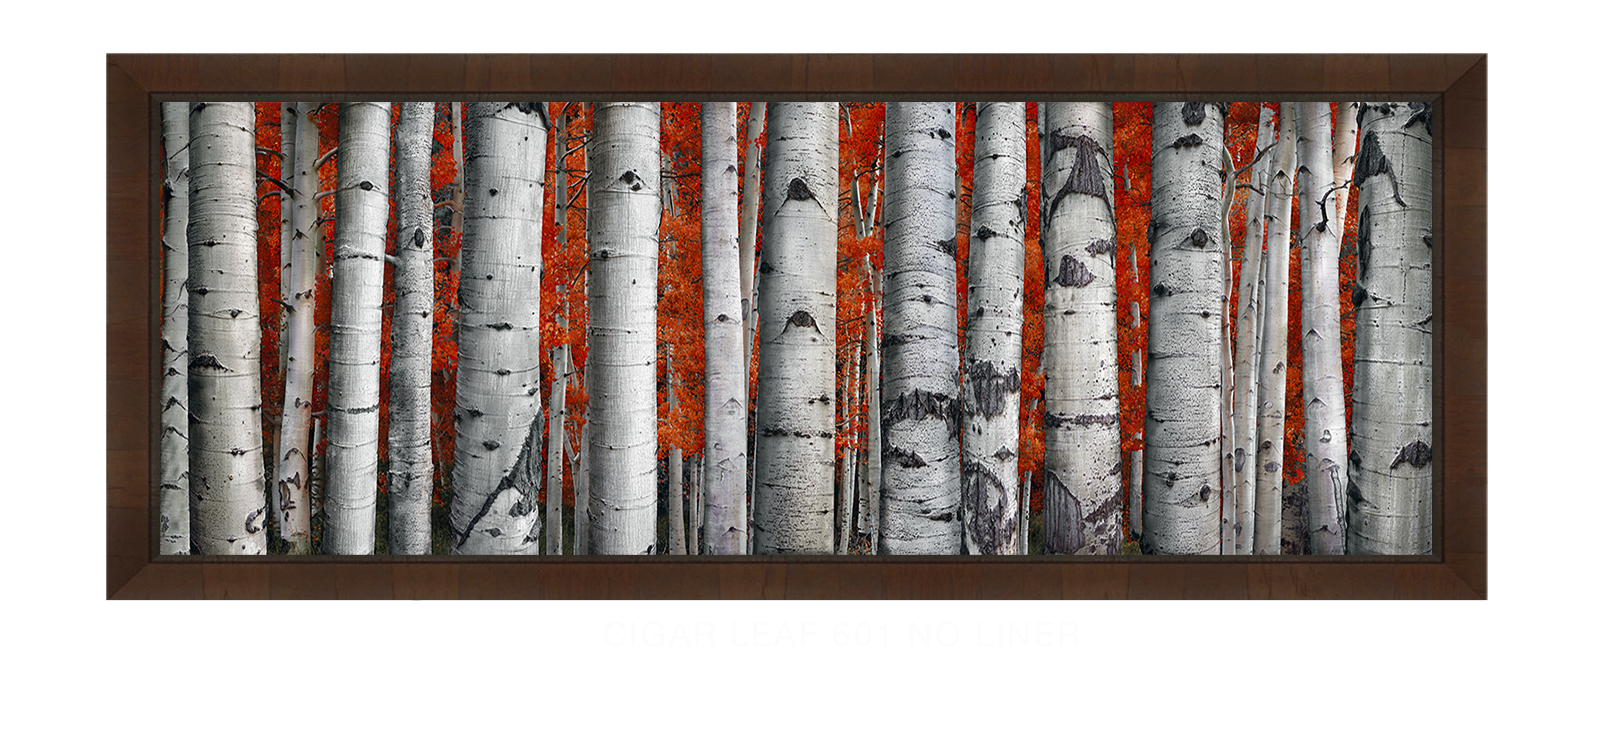 31ASPEN Cigar Leaf 601 w_No Liner T